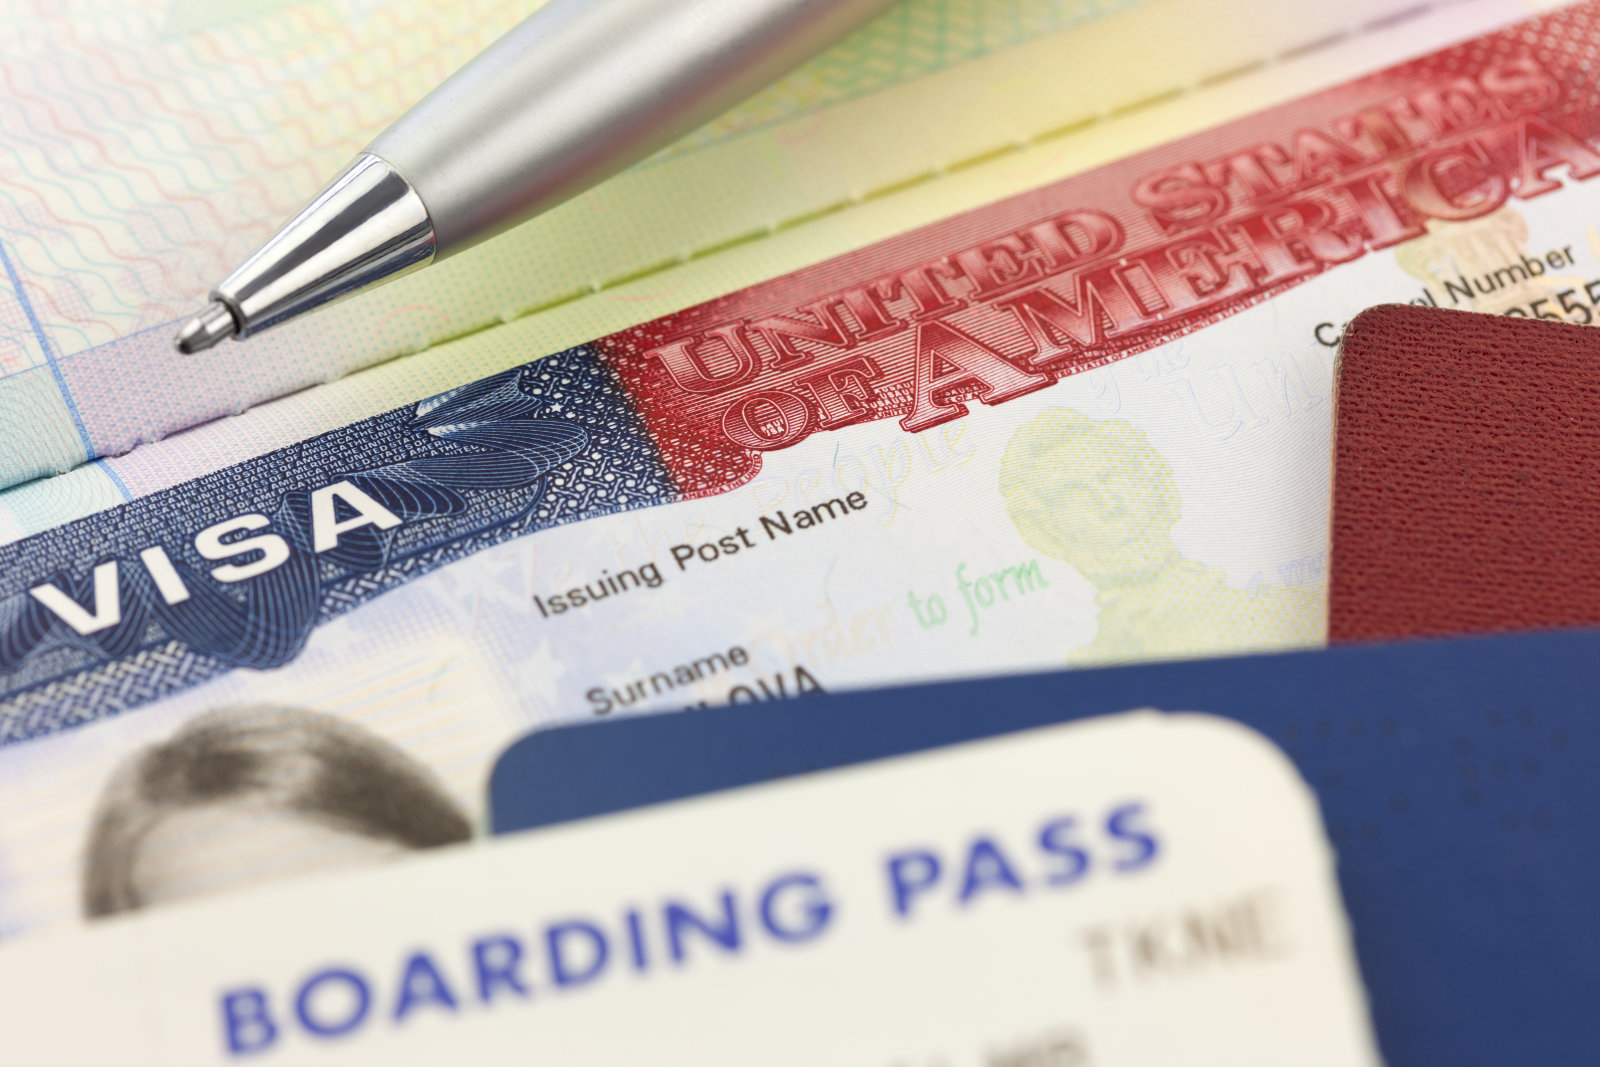 ABD vize için sosyal medya hesaplarını inceleyecek!